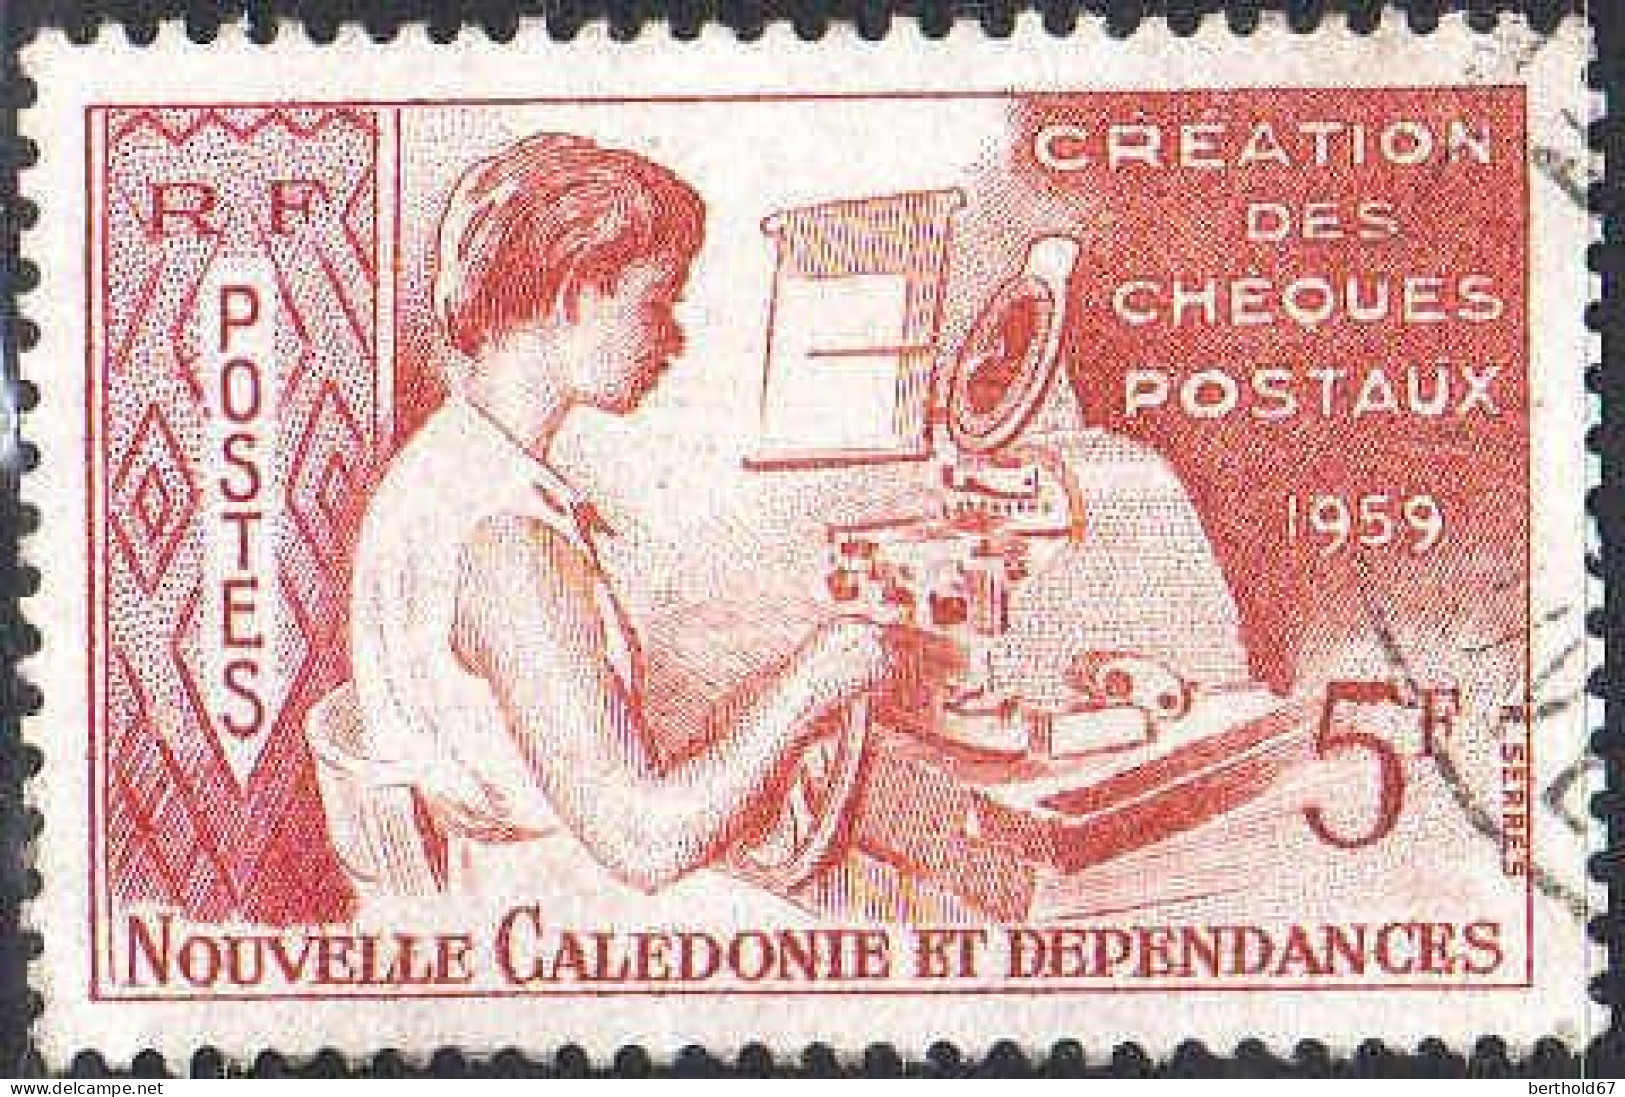 Nle-Calédonie Poste Obl Yv: 296 Mi:371 Création Des Cheques Postaux (Beau Cachet Rond) - Gebraucht